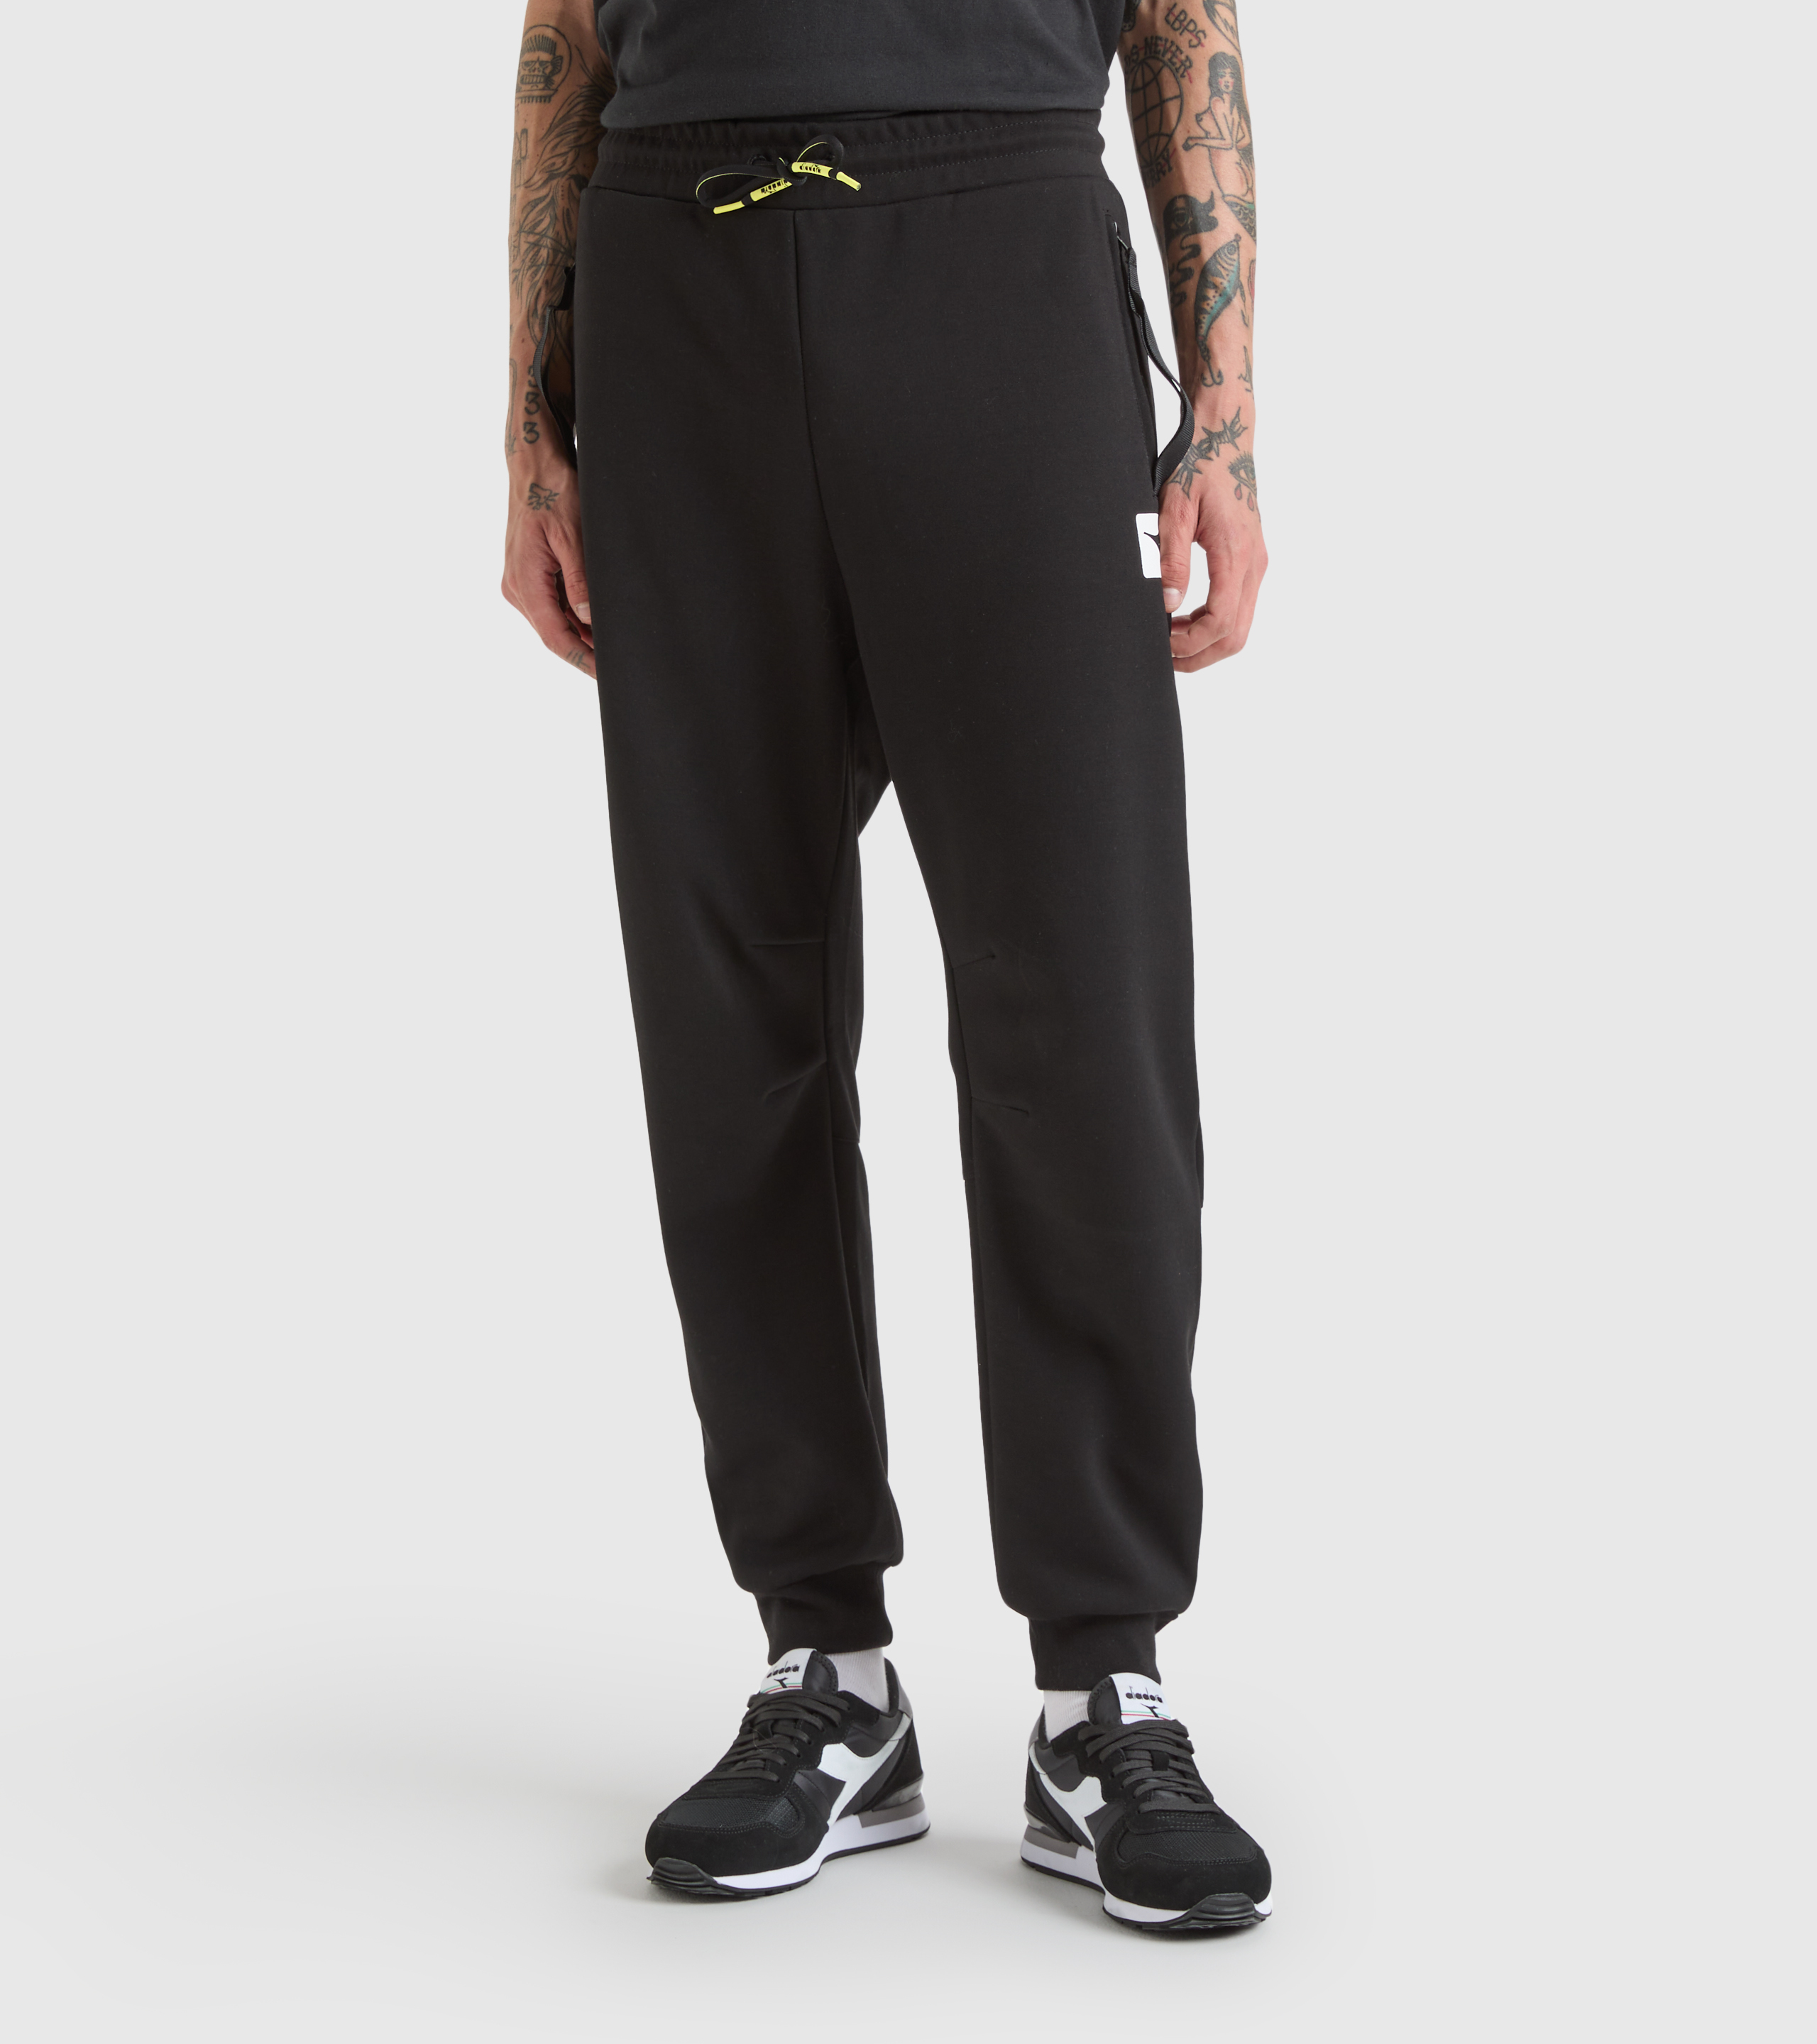 TRACK PANTS 80S Sweatpants - Gender Neutral - Diadora Online Store CA